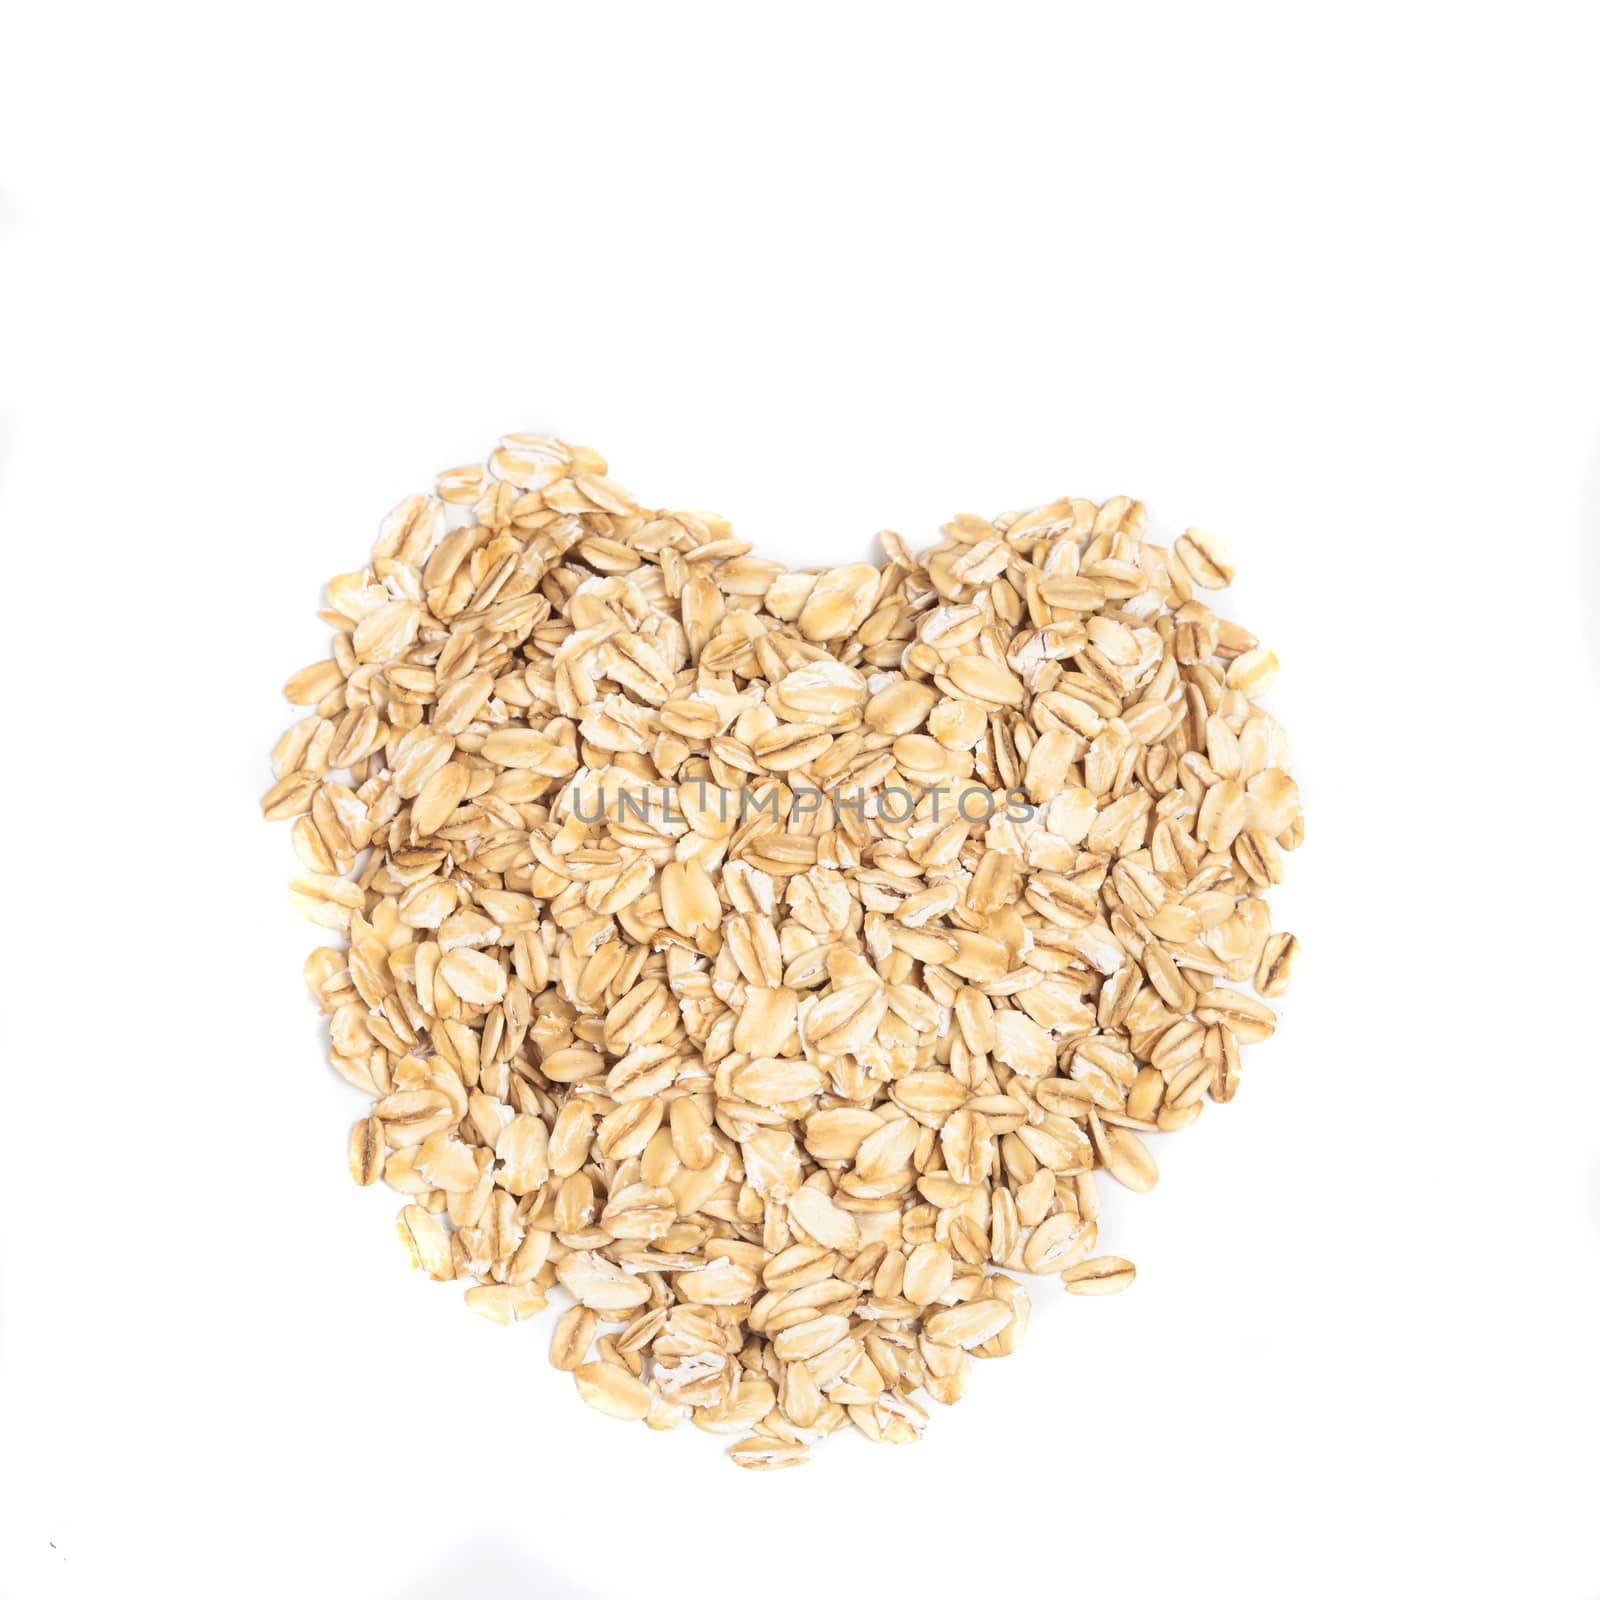 oat flakes in a shape of heart by amnarj2006